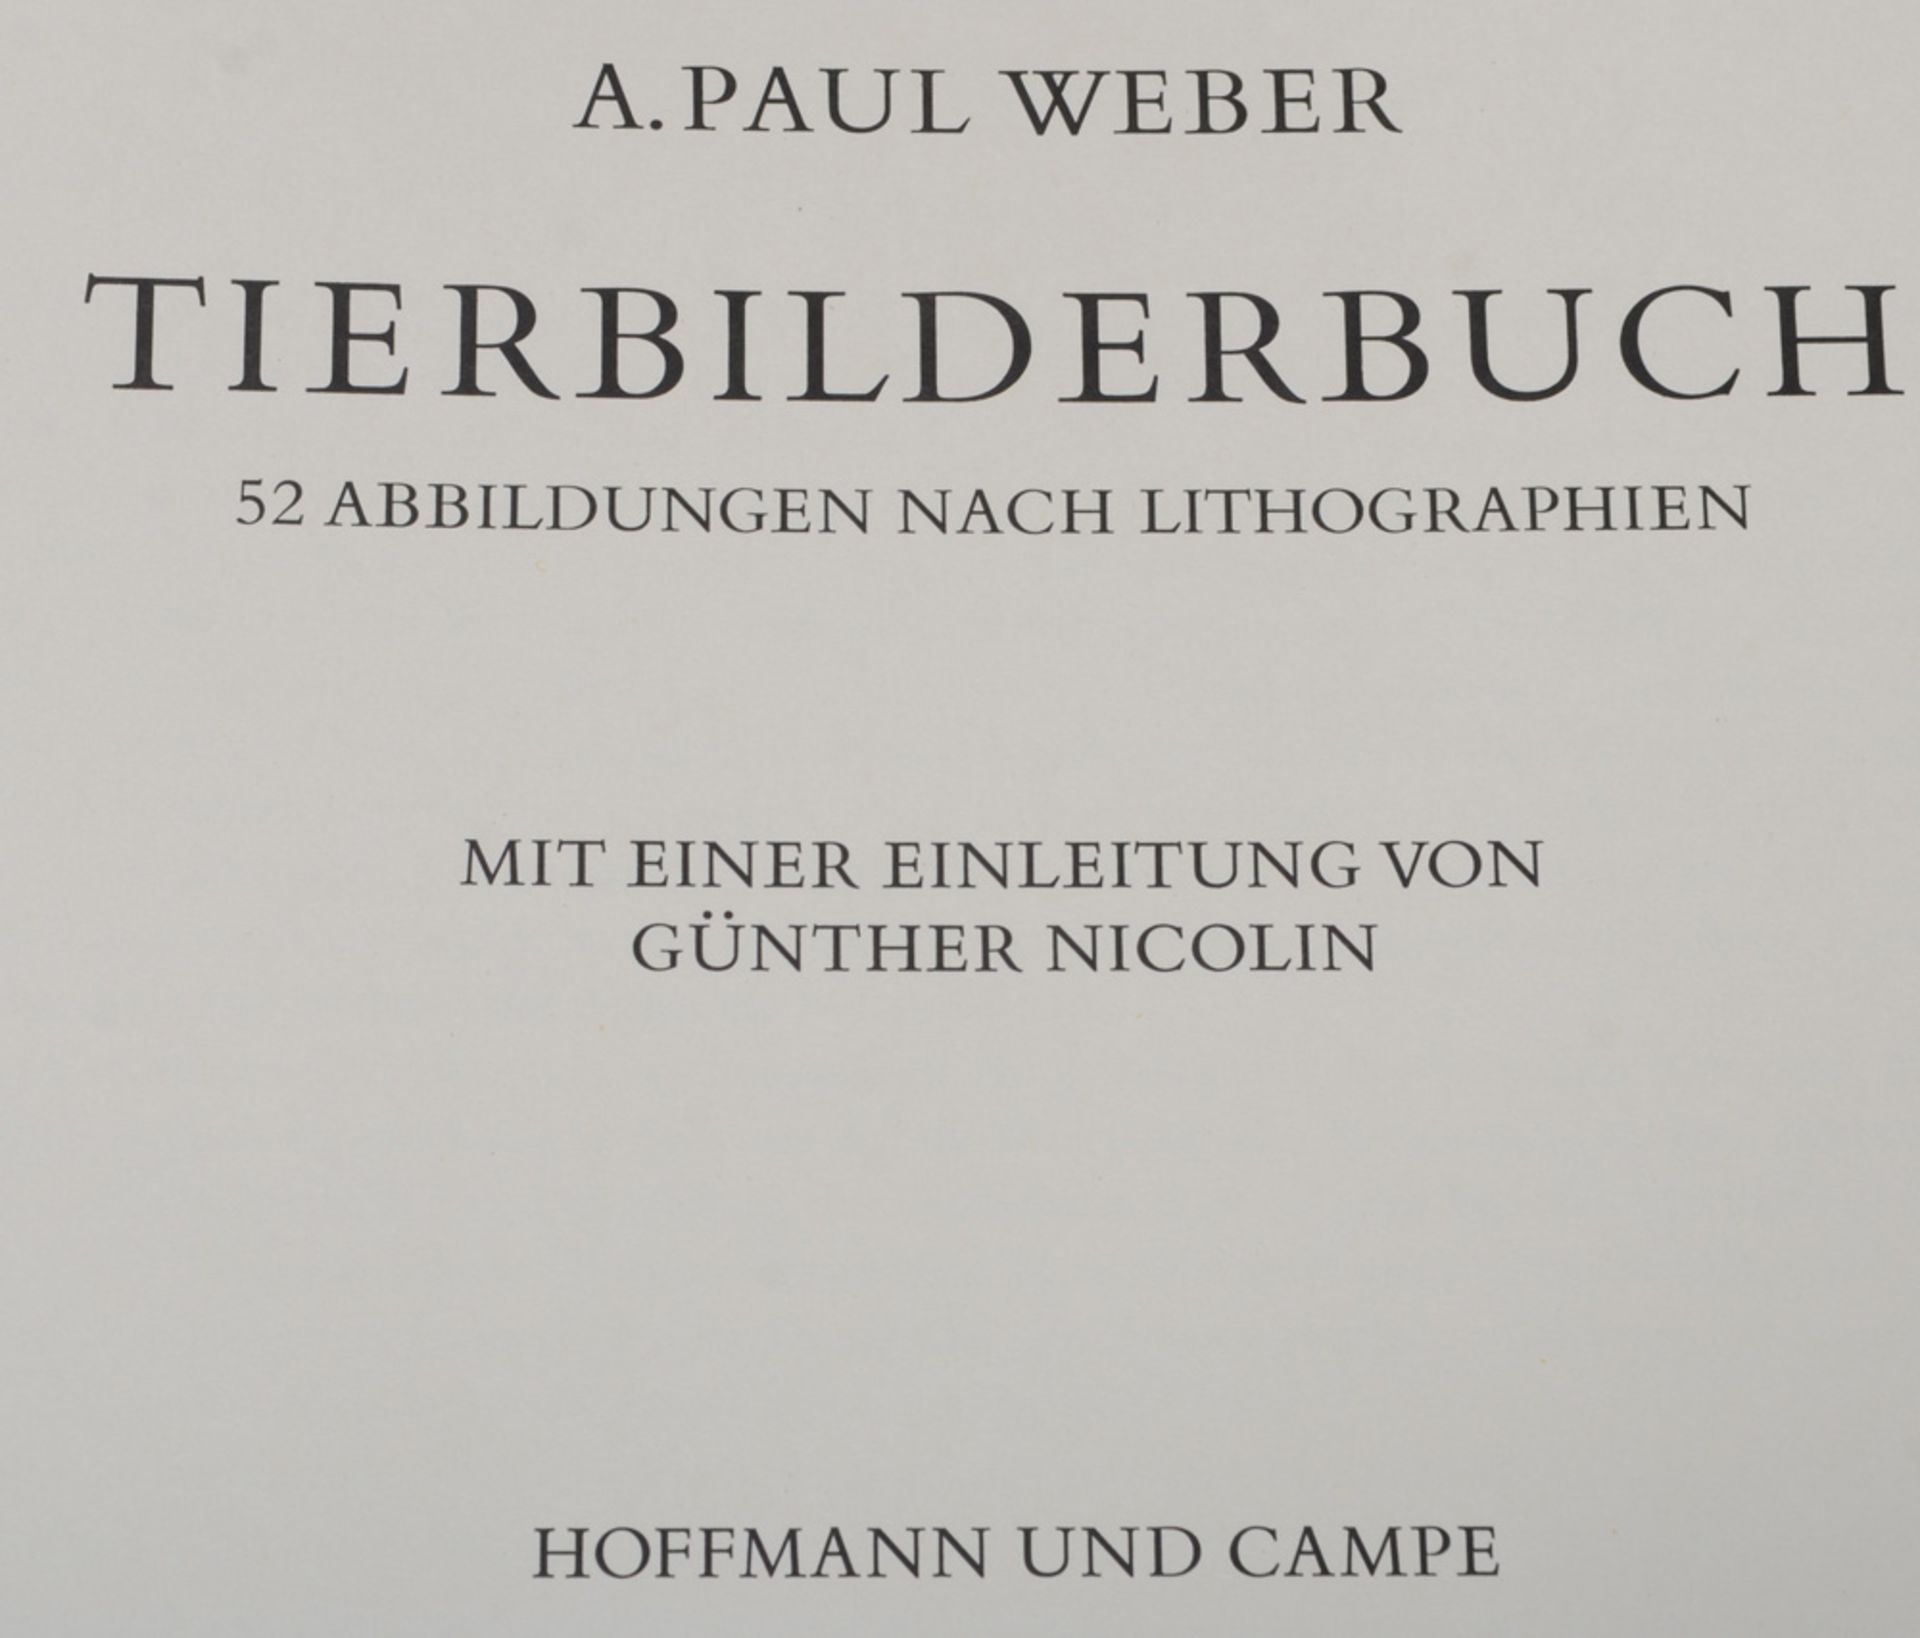 A. Paul Weber „Tierbilderbuch“, mit 52 Abbildungen nach Lithographien, Hoffmann und Campe, Hamburg - Image 2 of 6